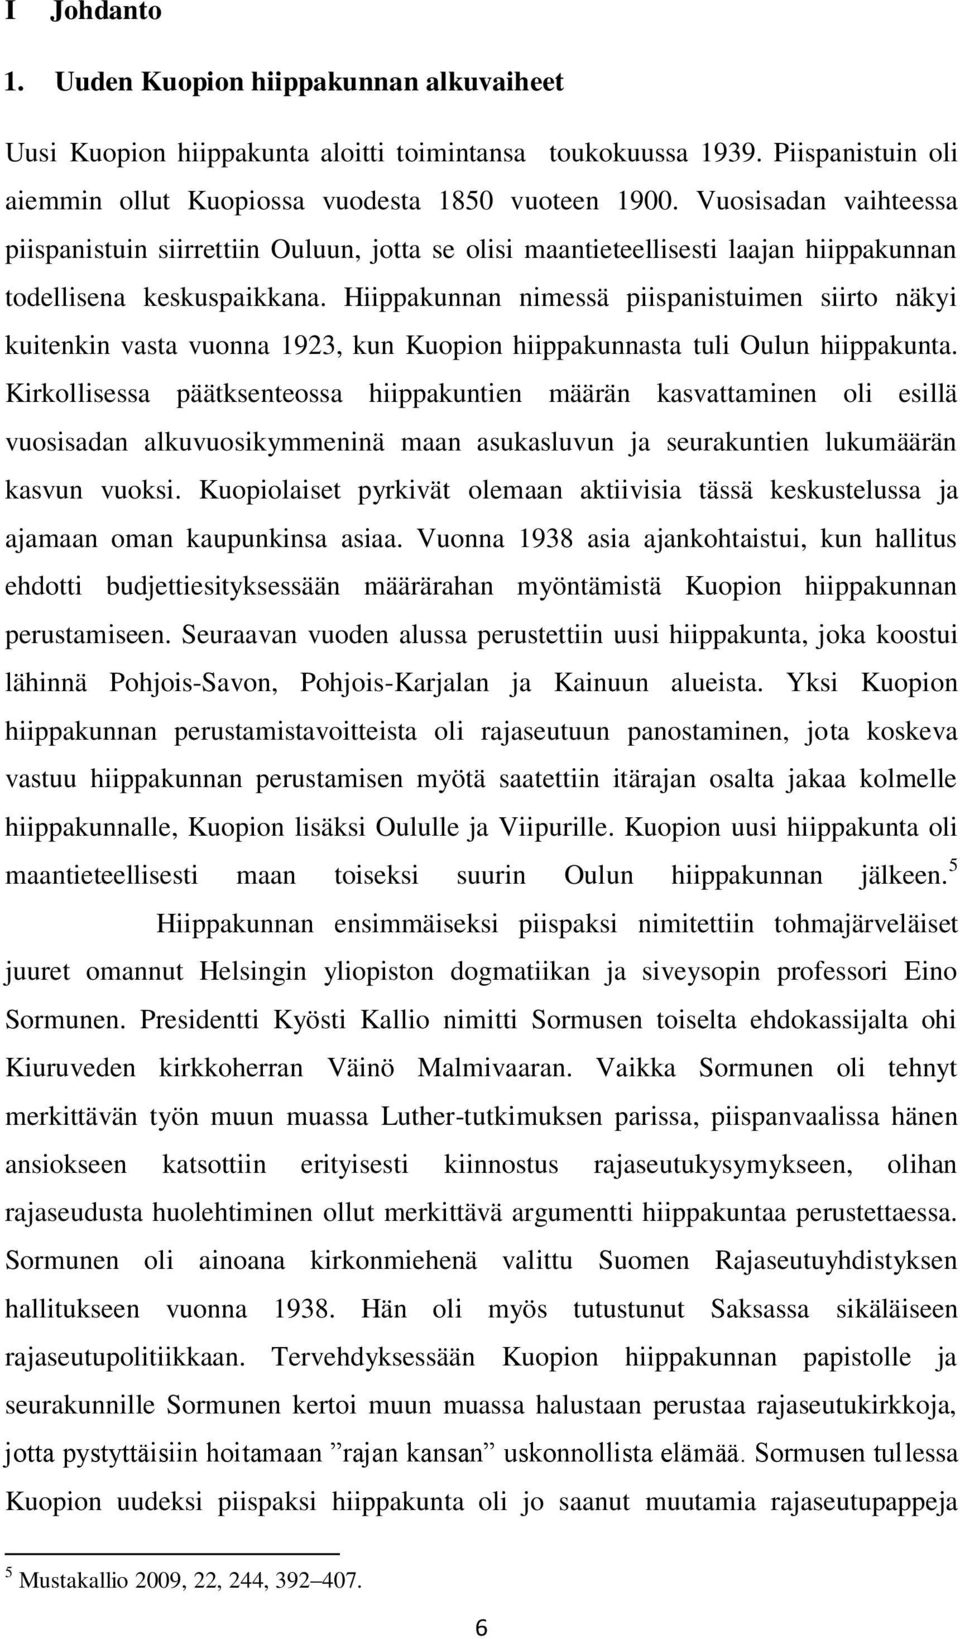 Hiippakunnan nimessä piispanistuimen siirto näkyi kuitenkin vasta vuonna 1923, kun Kuopion hiippakunnasta tuli Oulun hiippakunta.